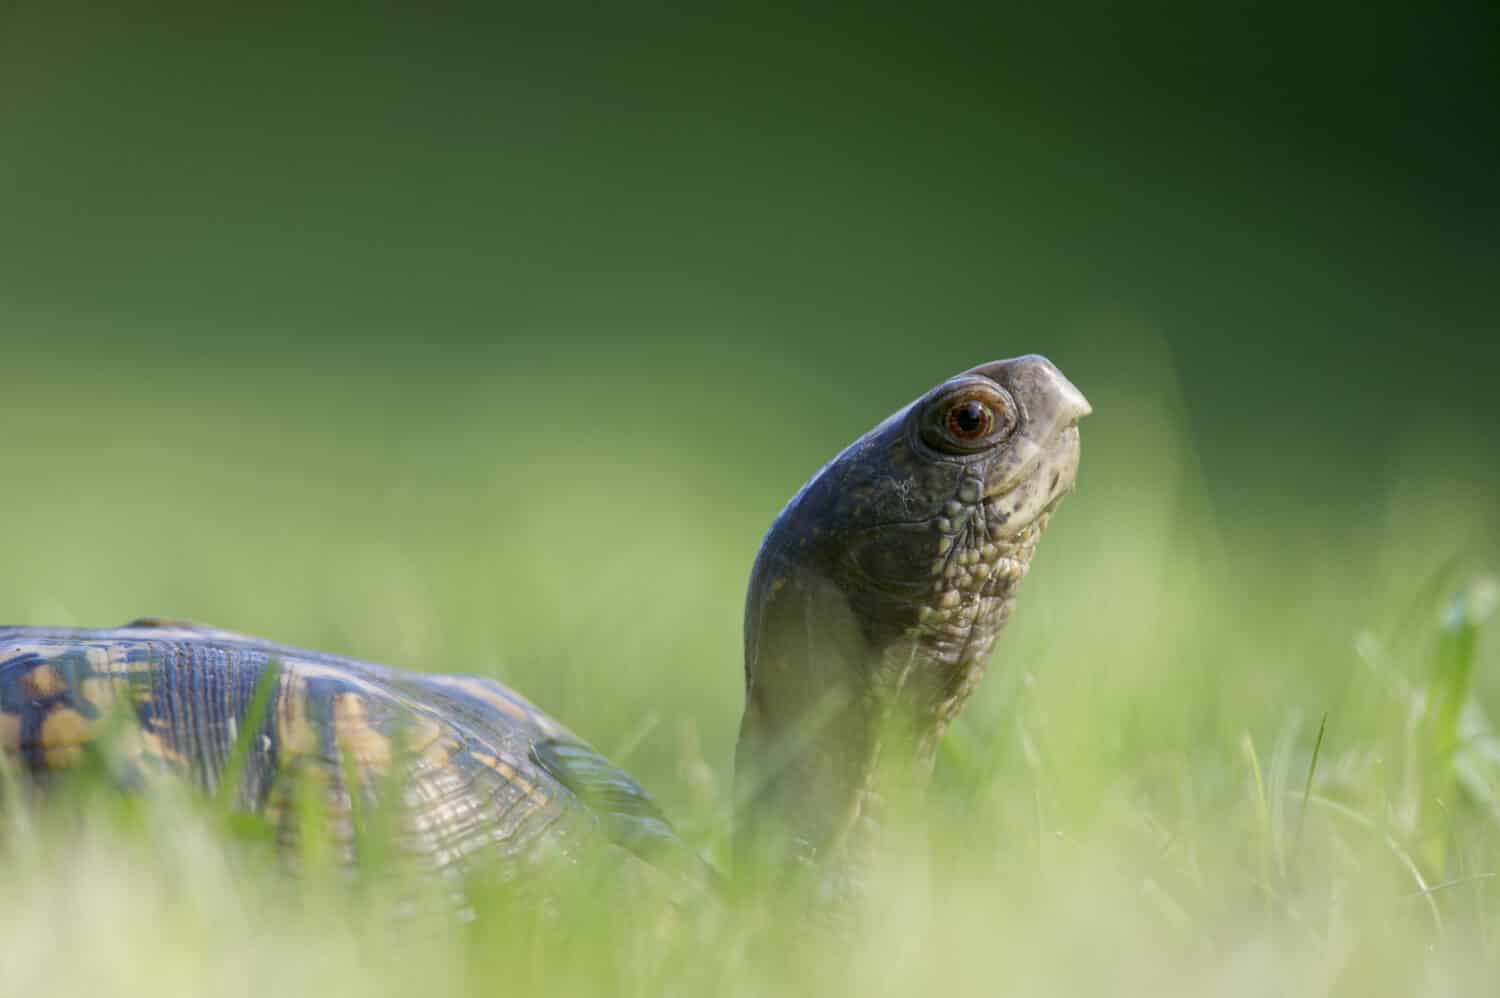 An Eastern Box Turtle walks through the tall green grass.